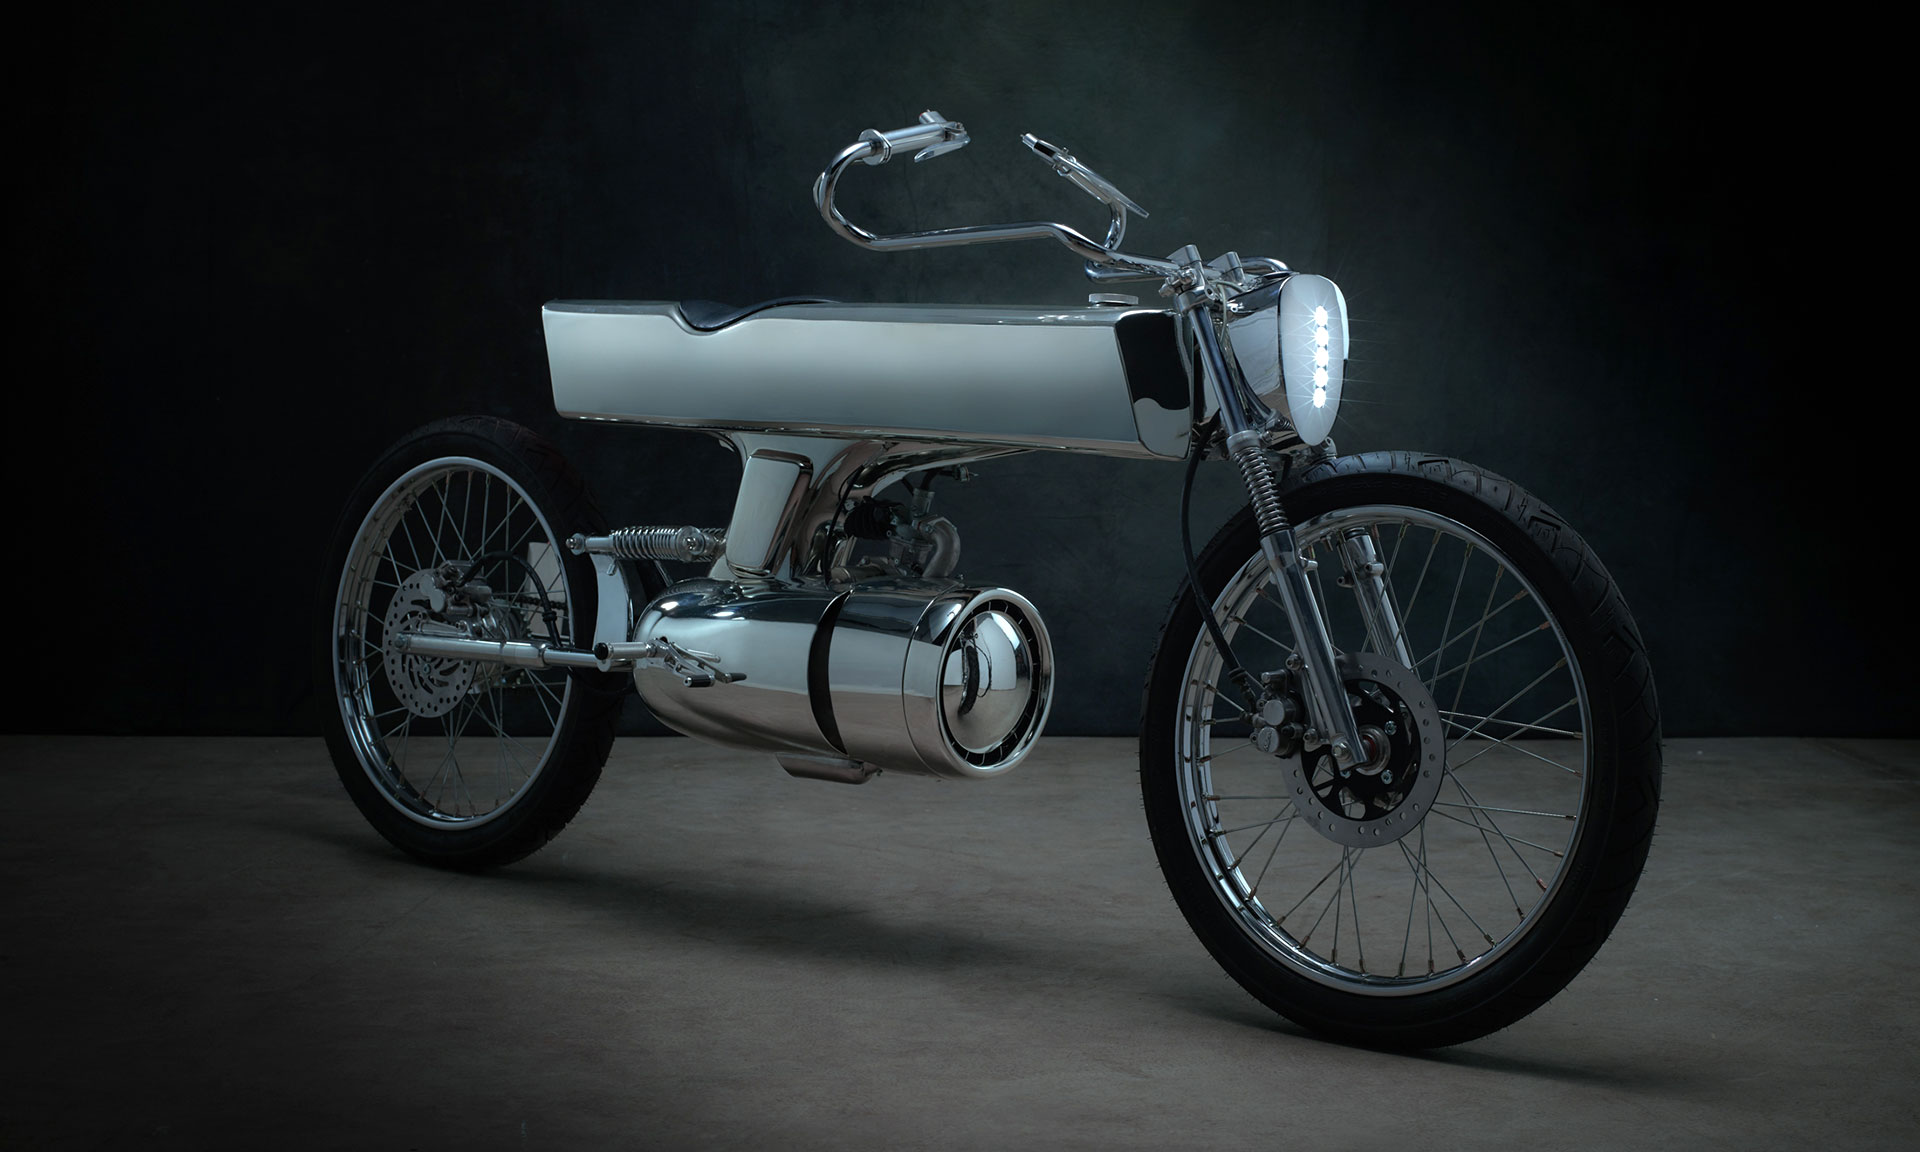 Bandit9 navrhli futuristickou motorku L-Concept s nádechem starých časů